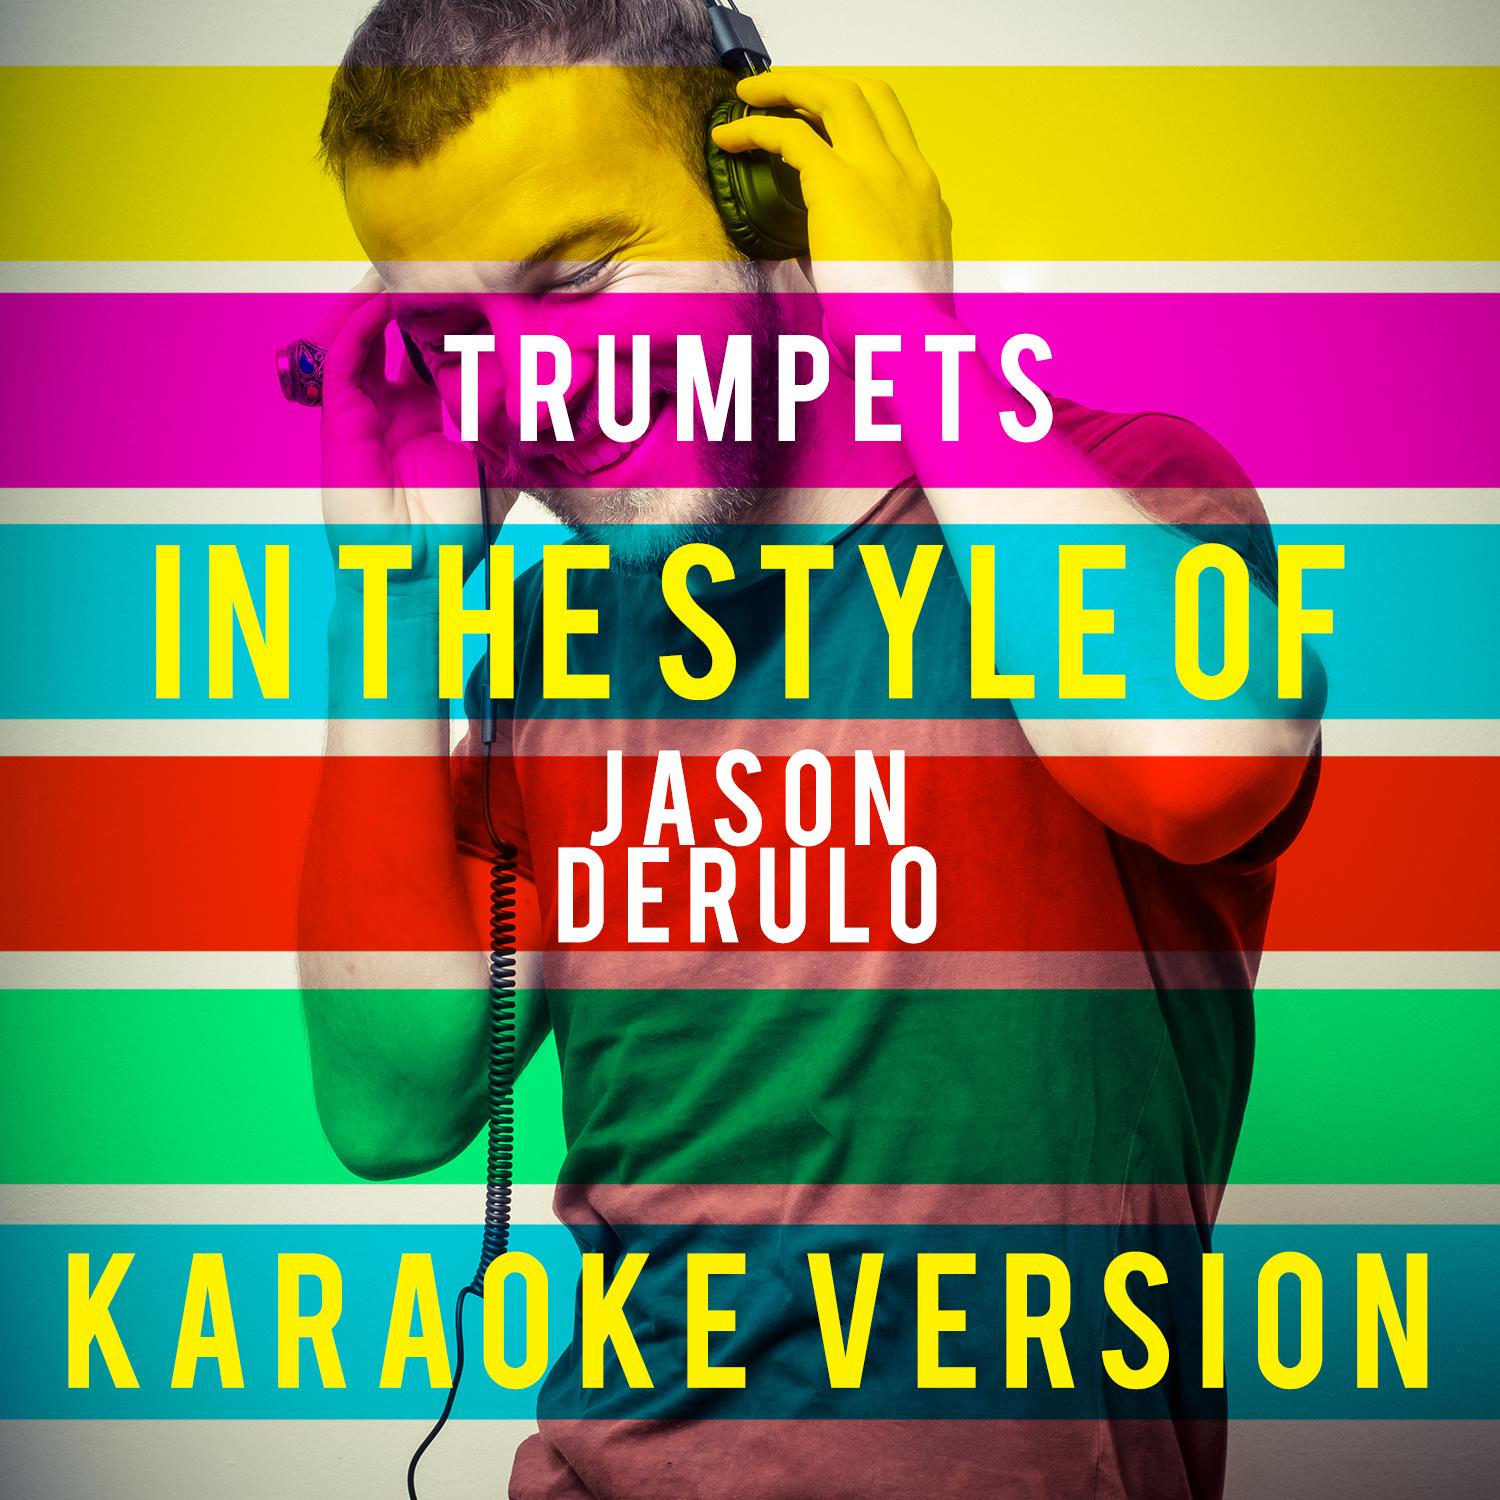 Trumpets (In the Style of Jason Derulo) [Karaoke Version] - Single